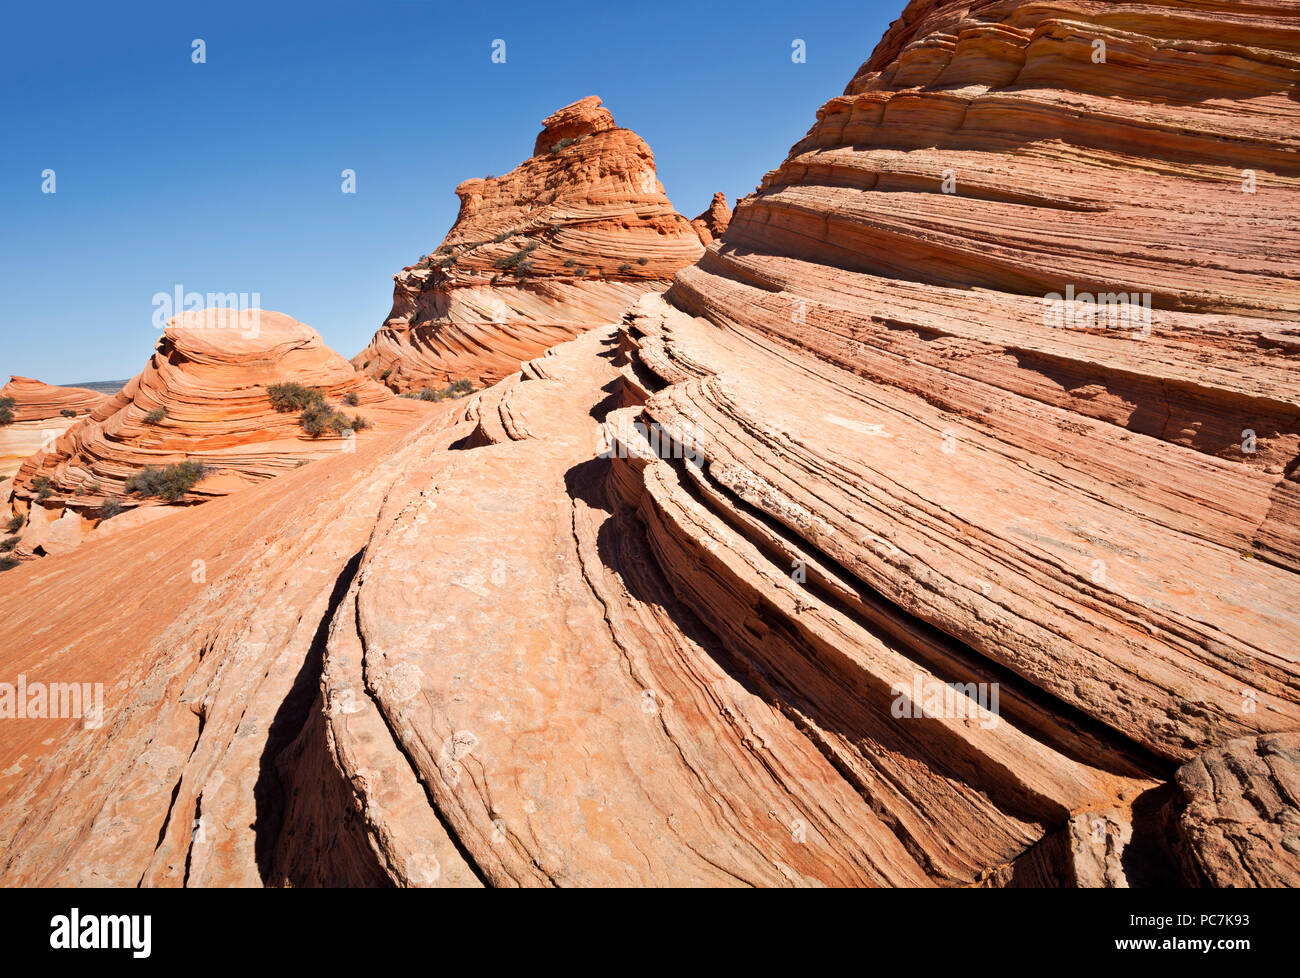 AZ 00193-00 ... ARIZONA - Die Schichten- und Sandstein Felsformationen in den Coyote Buttes, südlichen Abschnitt des Paria Canyon - Vermilion Cliffs Wilderness Area. Stockfoto